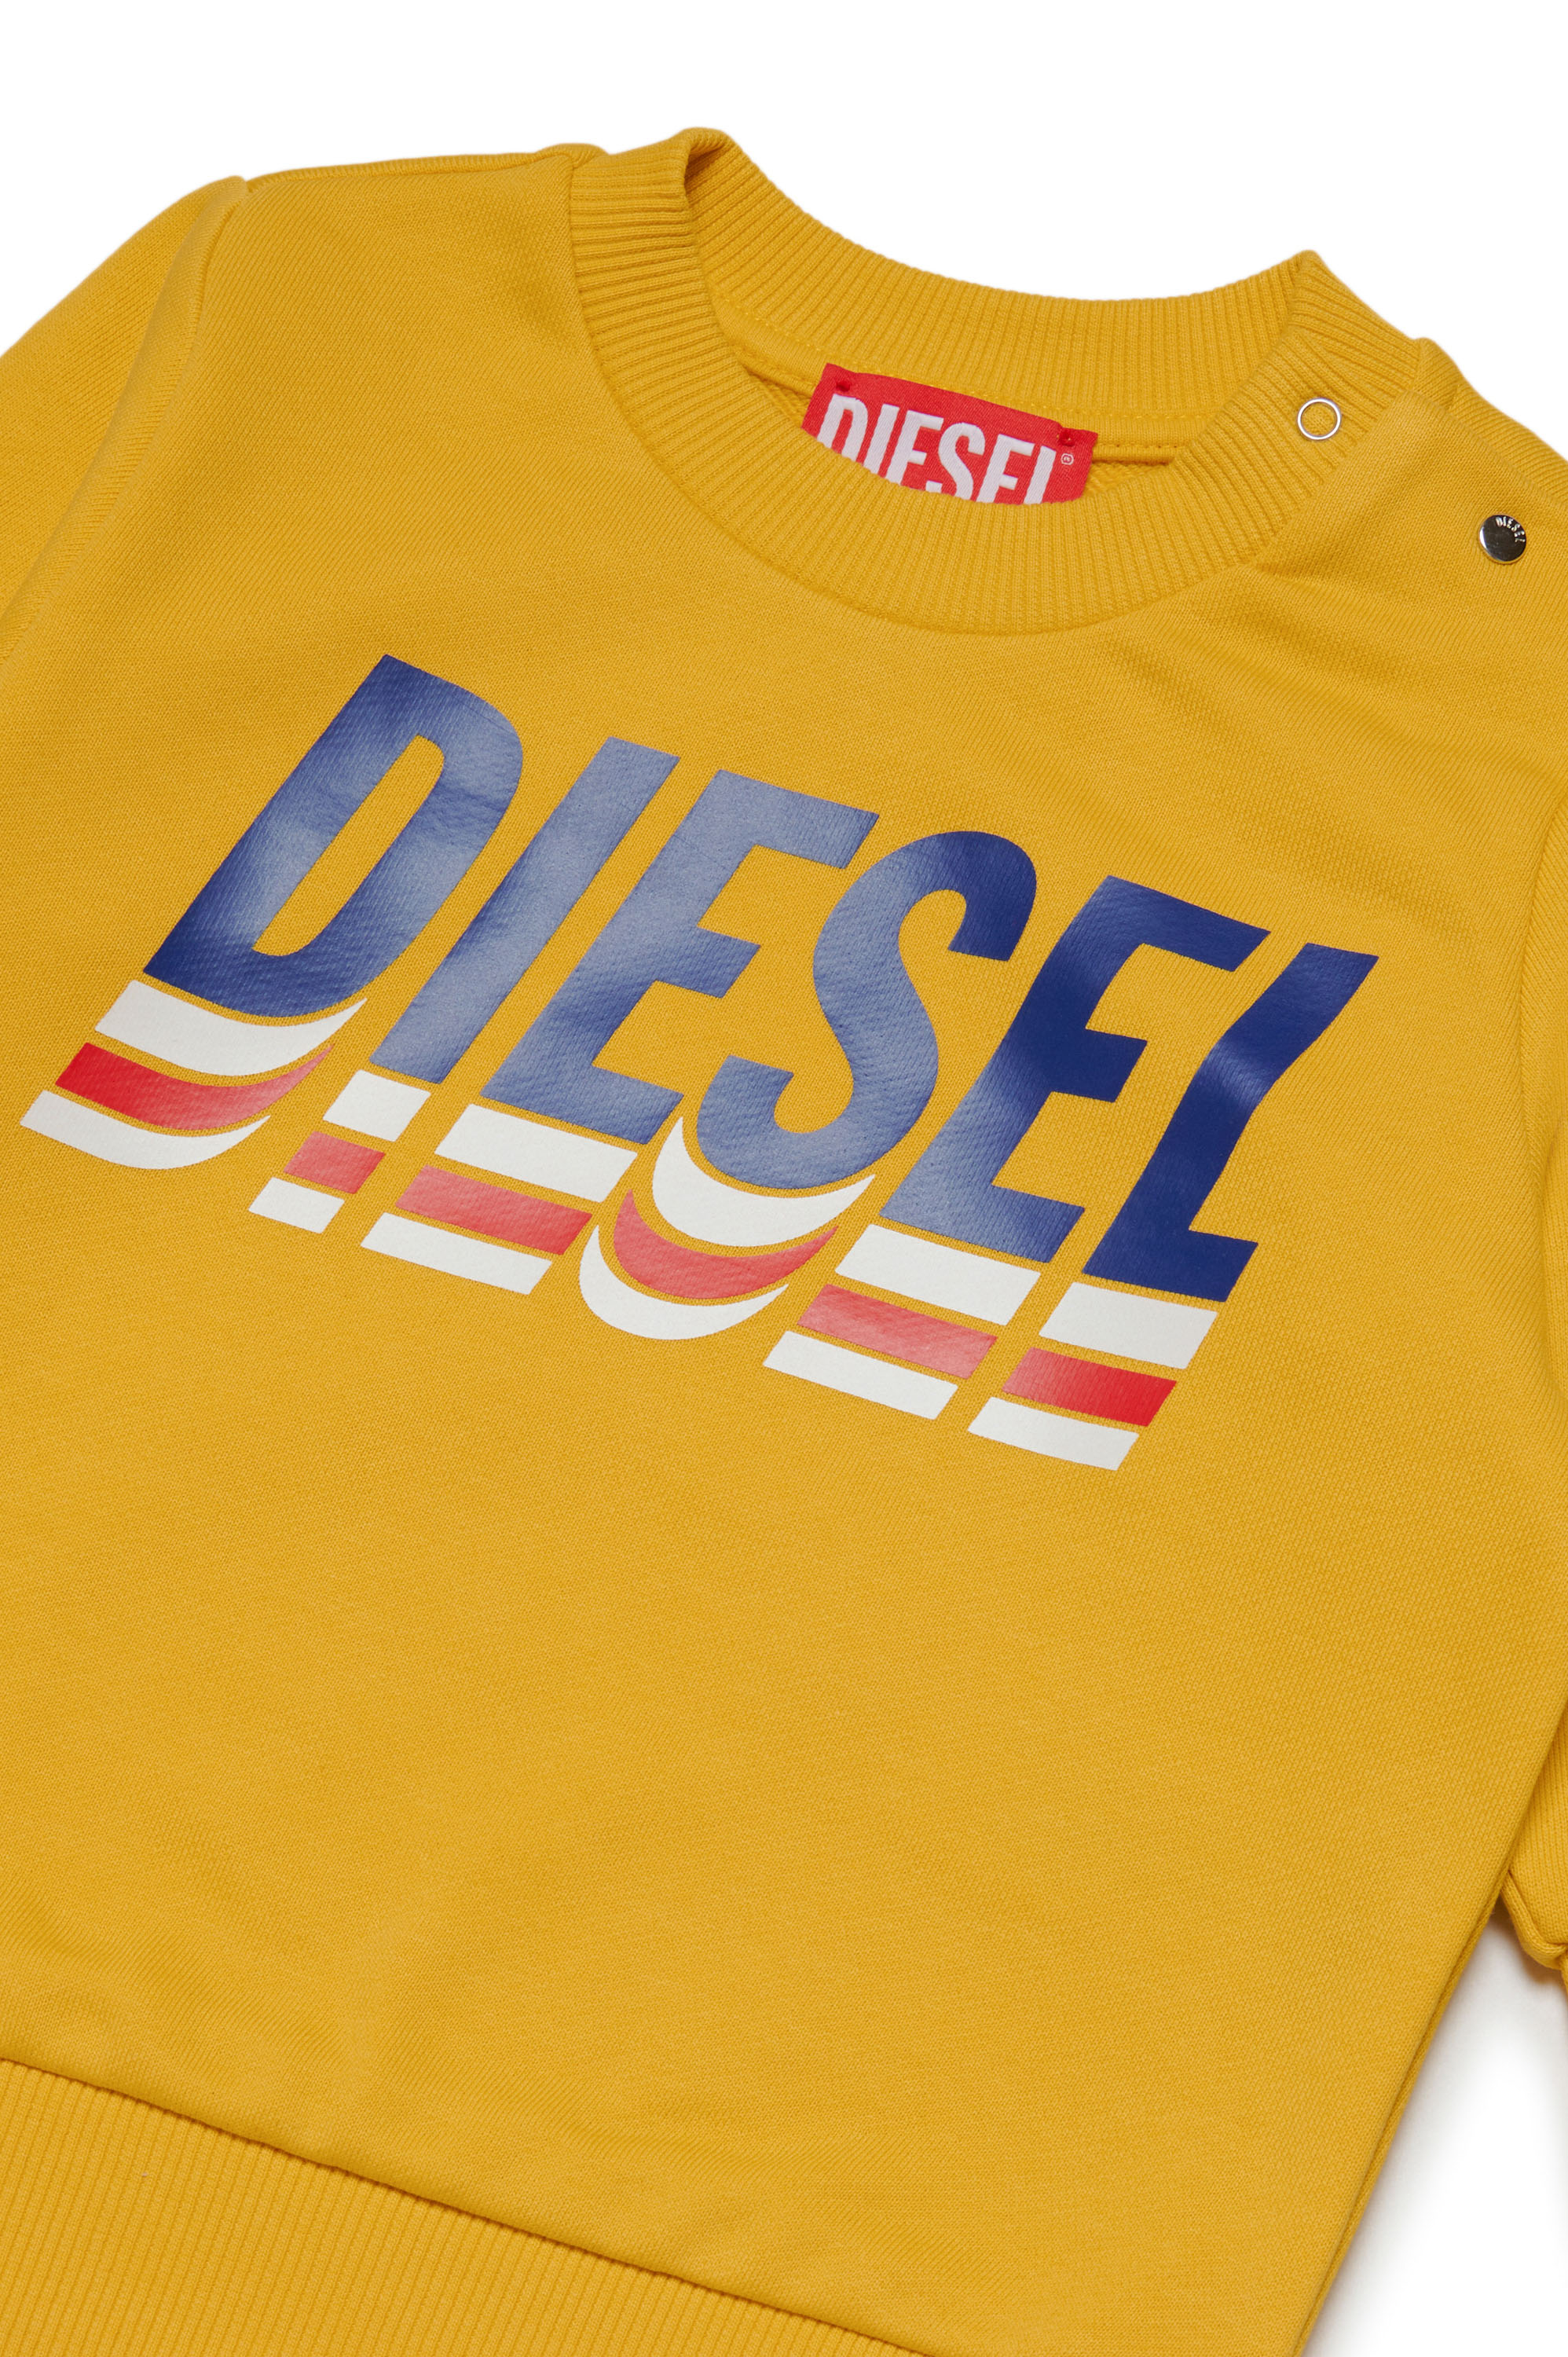 Diesel - SALTB, Yellow - Image 3